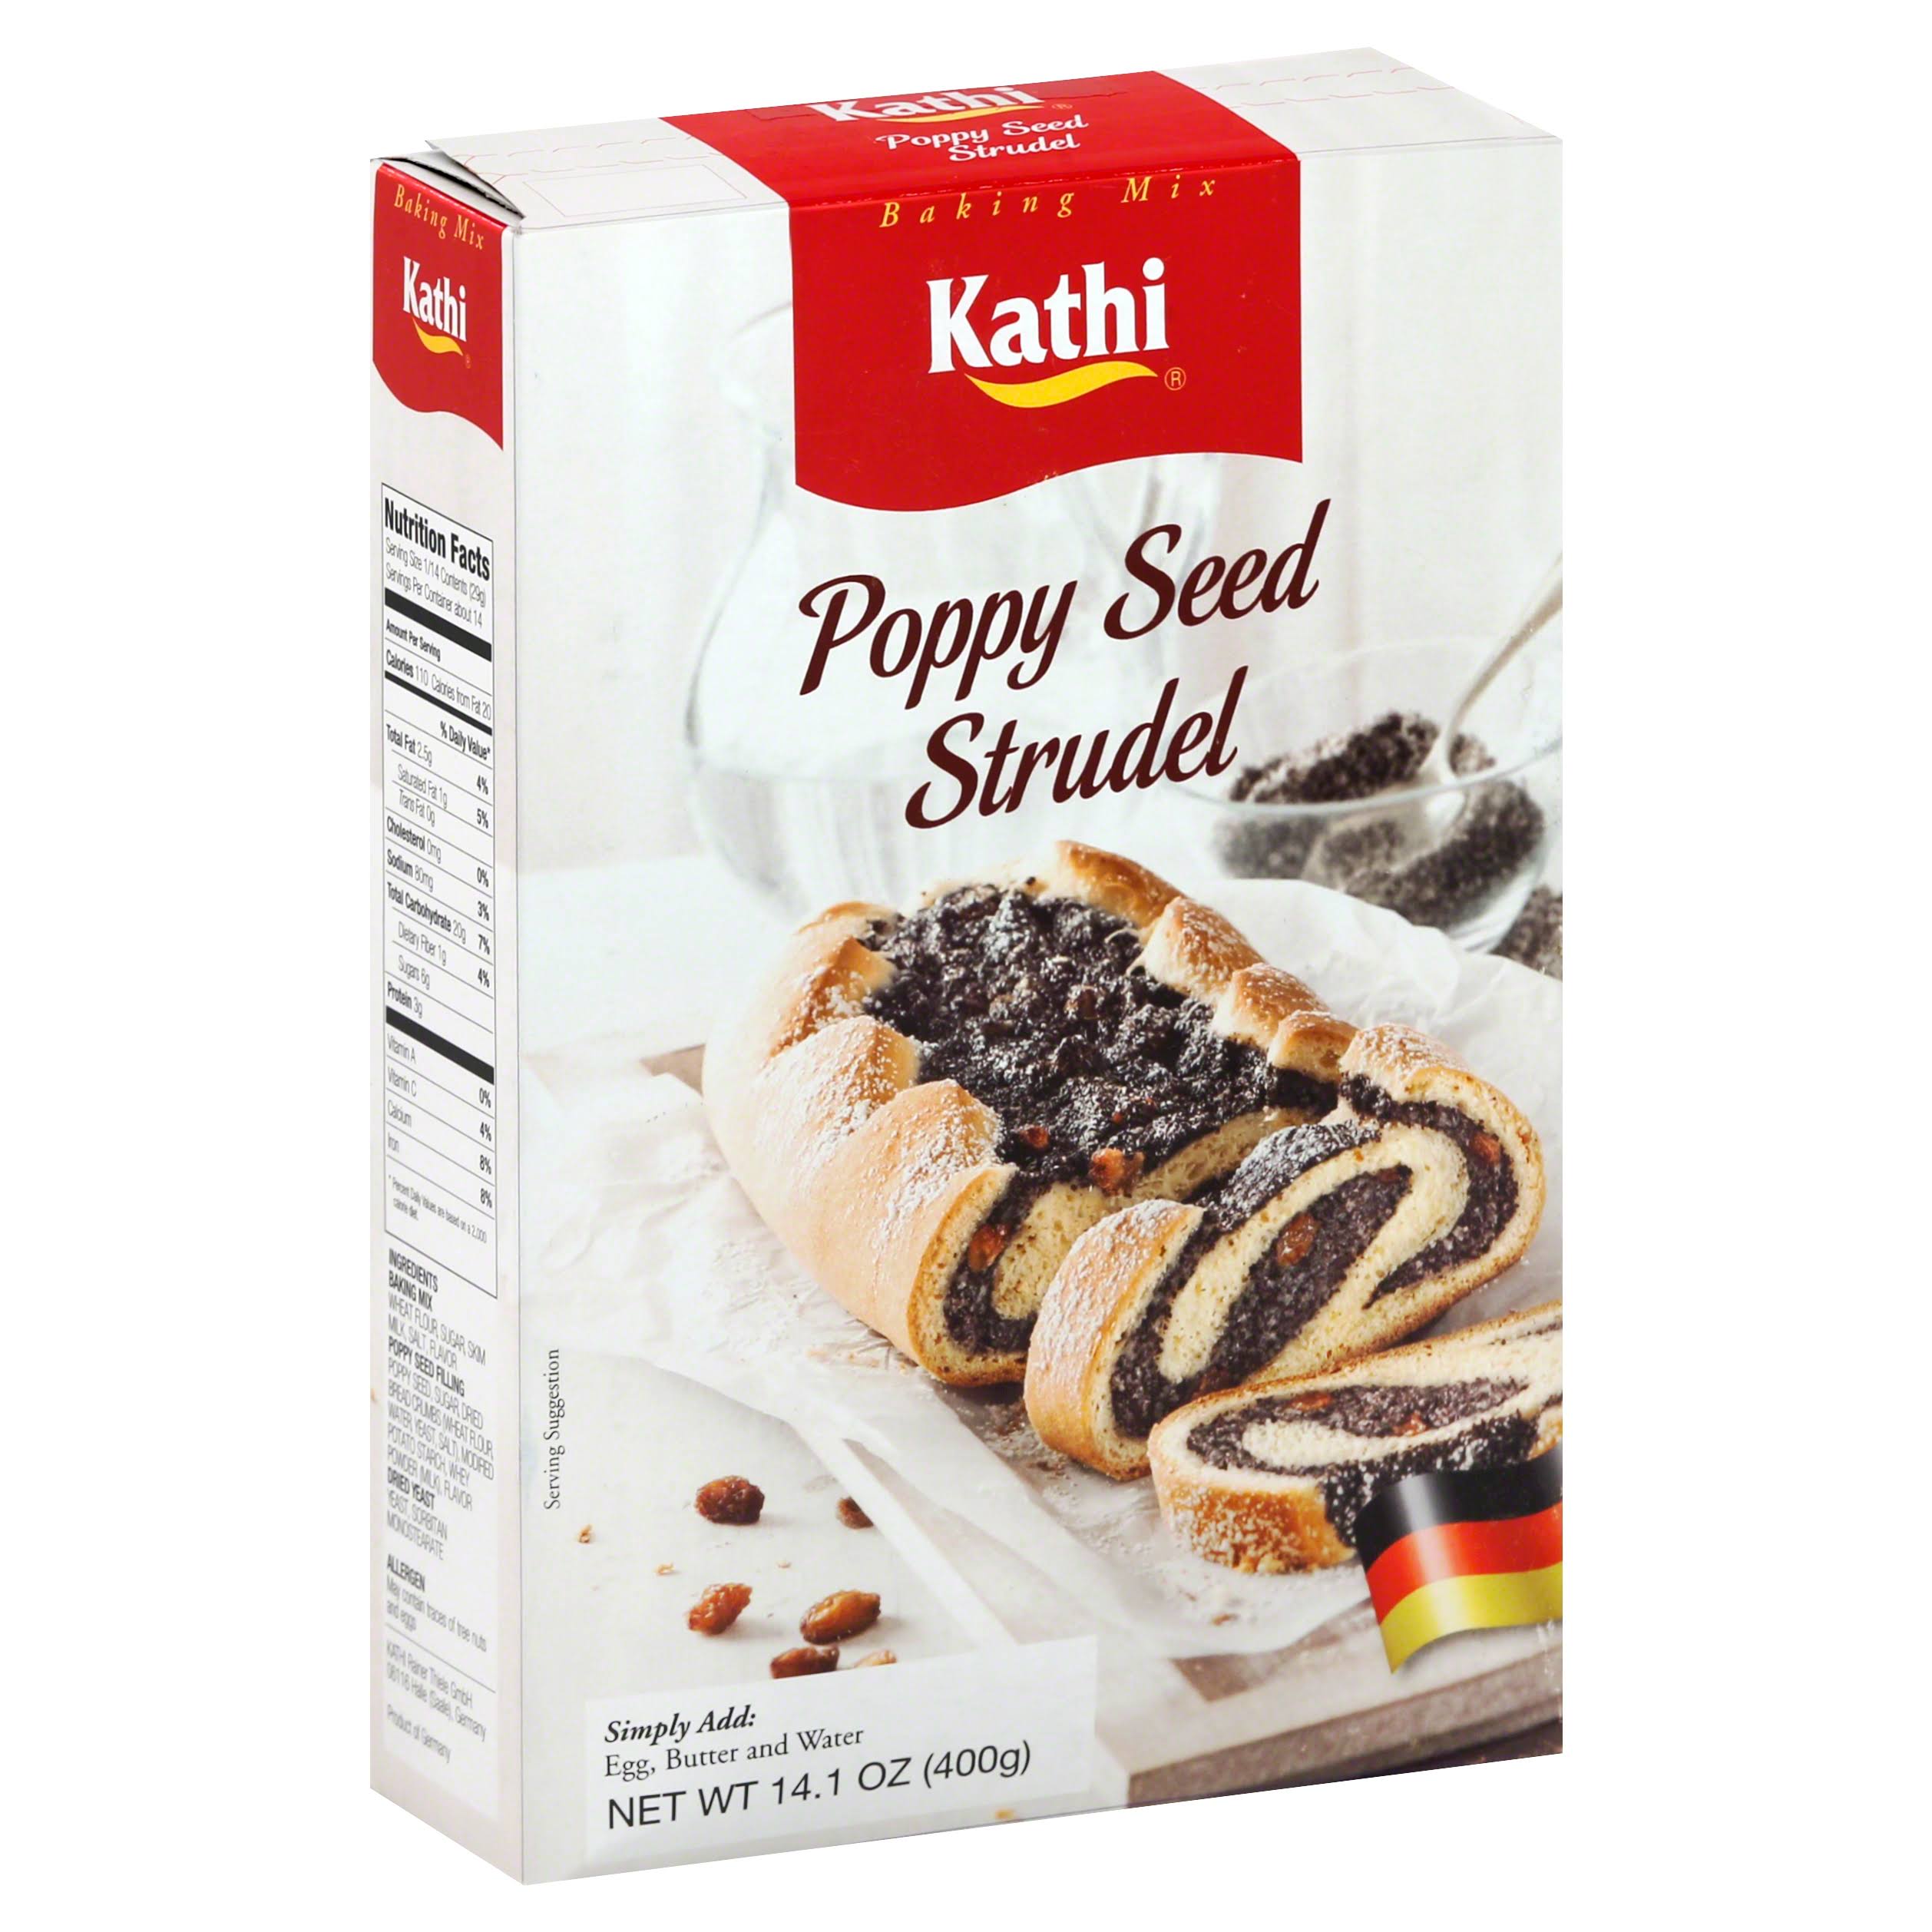 Kathi Baking Mix Poppy Seed Strudel - 14.1oz